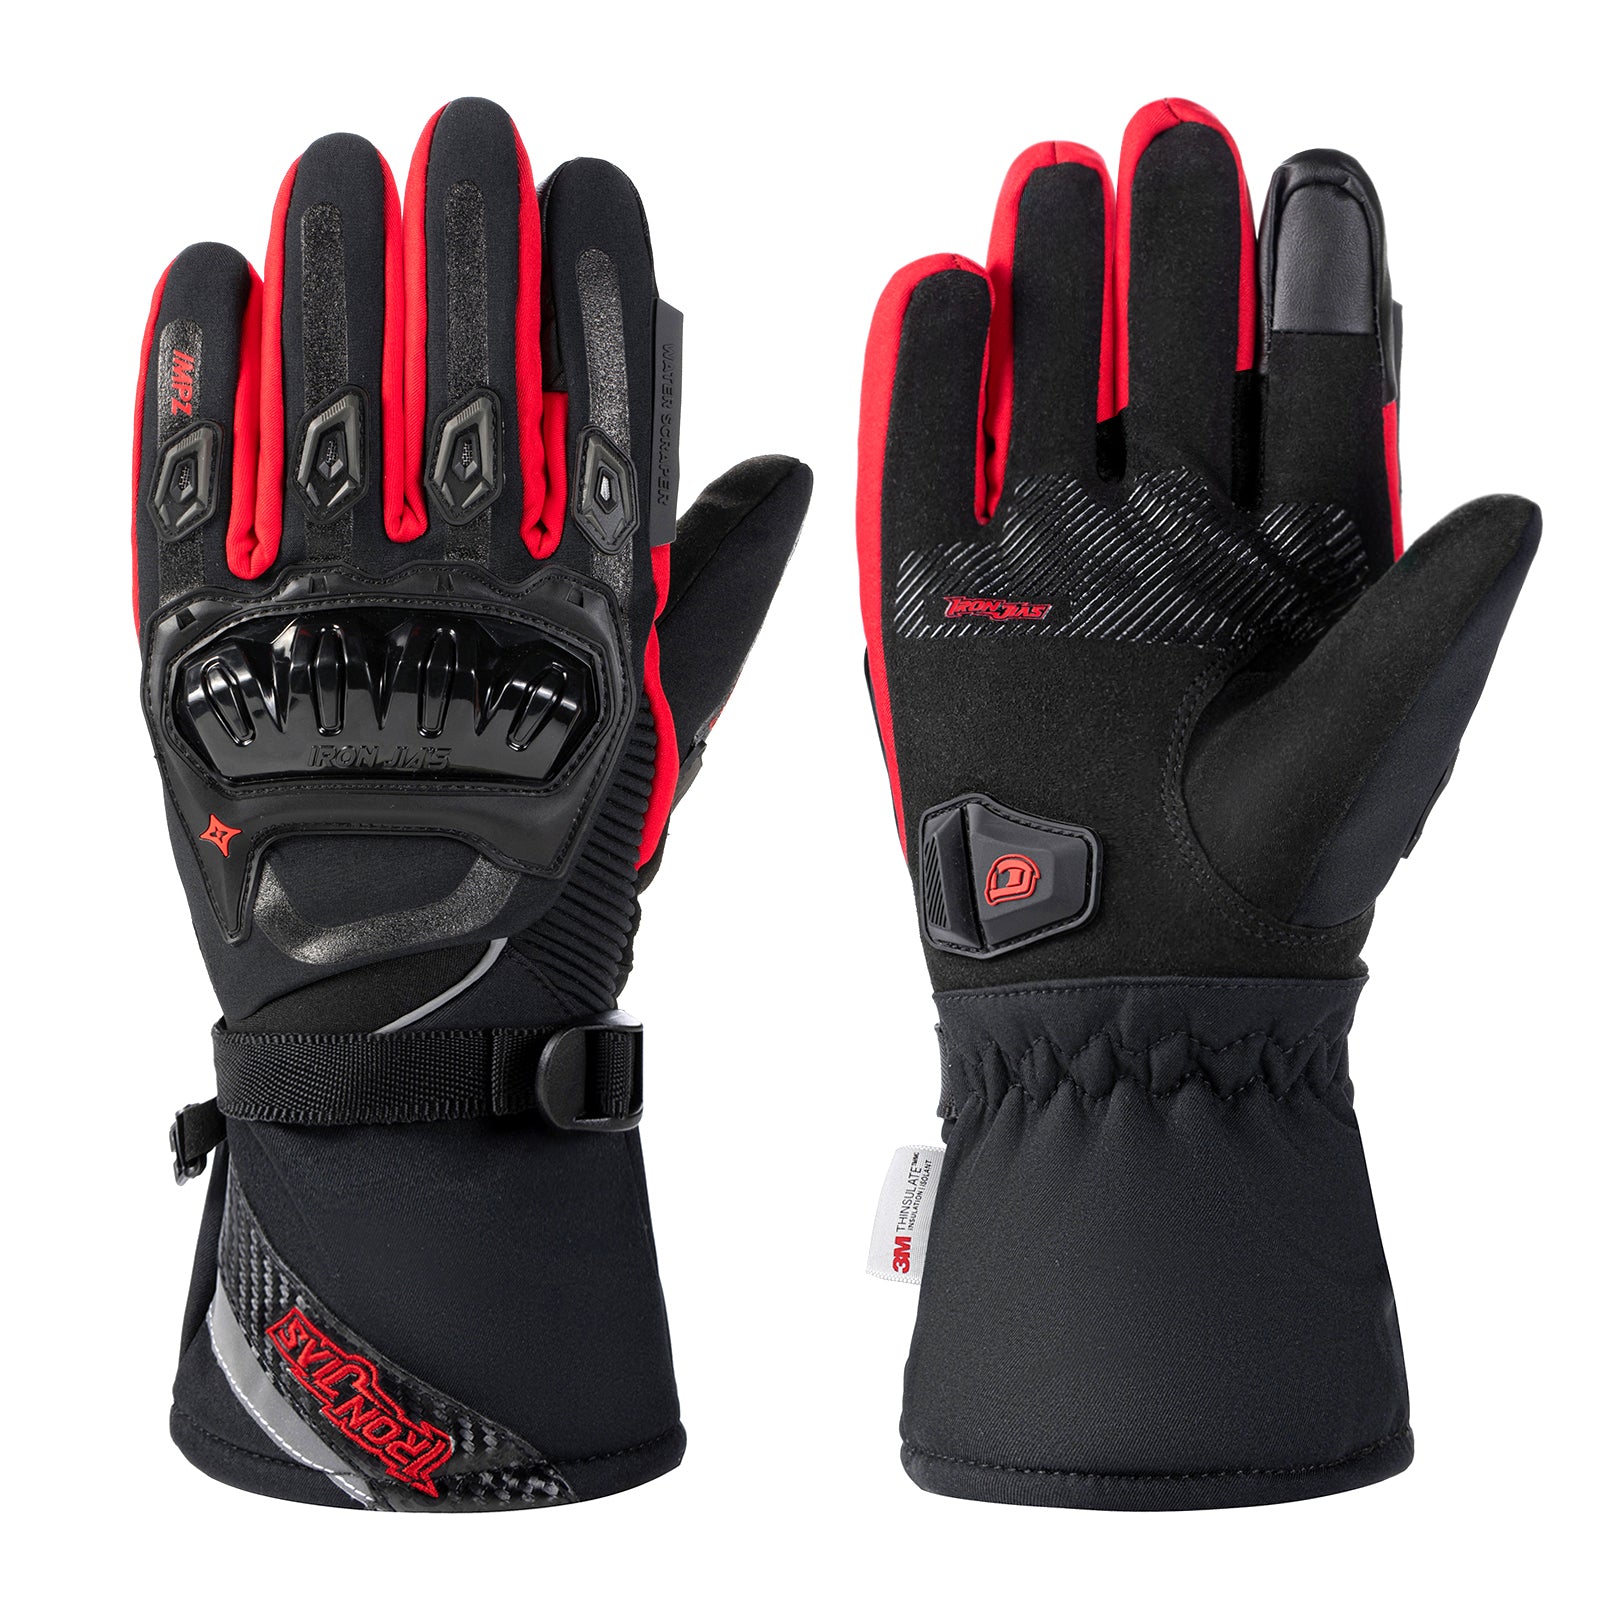 Red Waterproof Winter Motorcycle Gloves